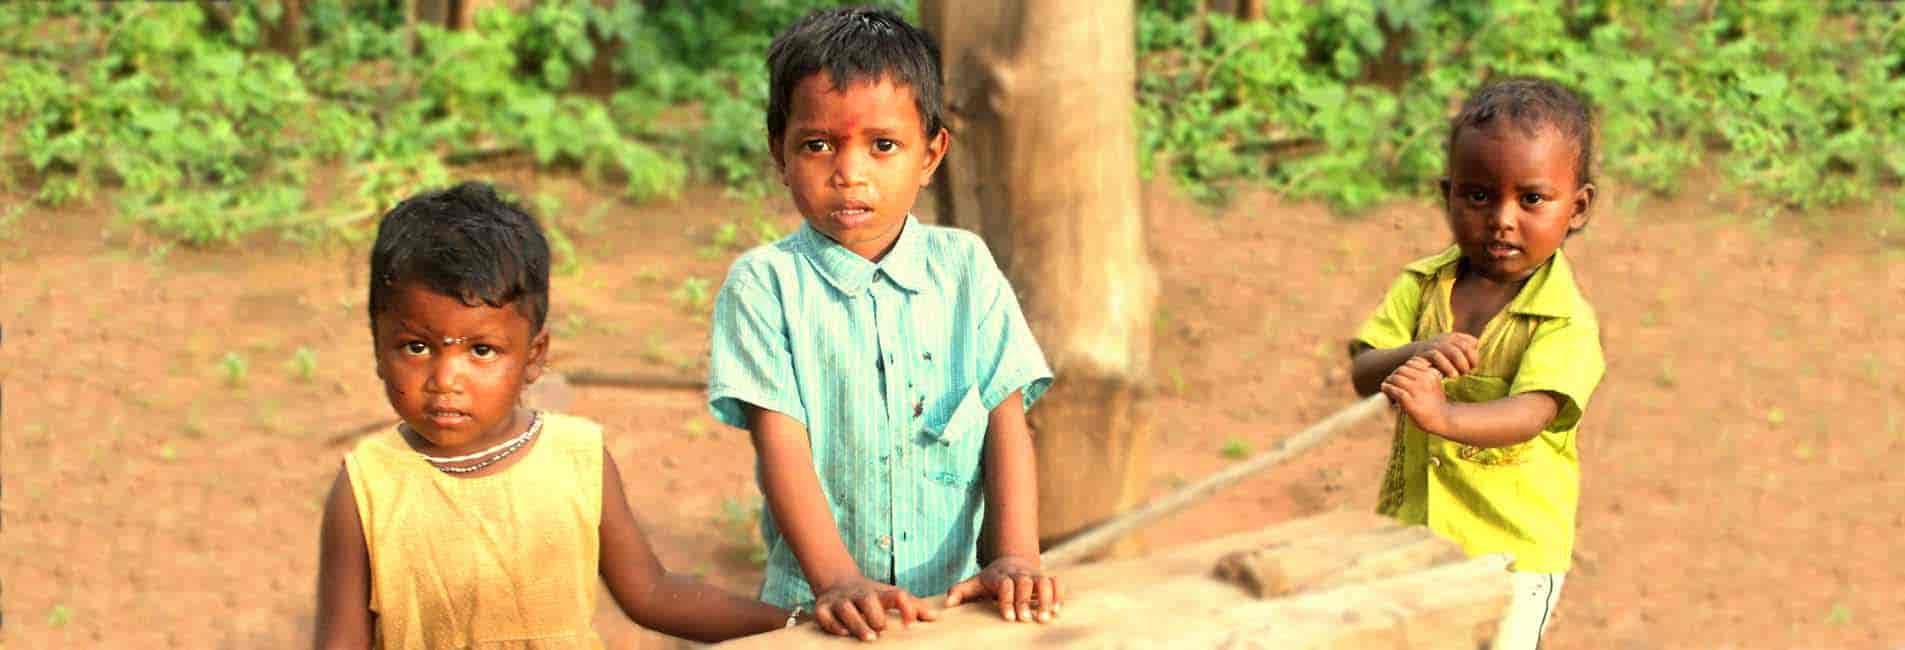 Slide Education For Poor Remote Area Children